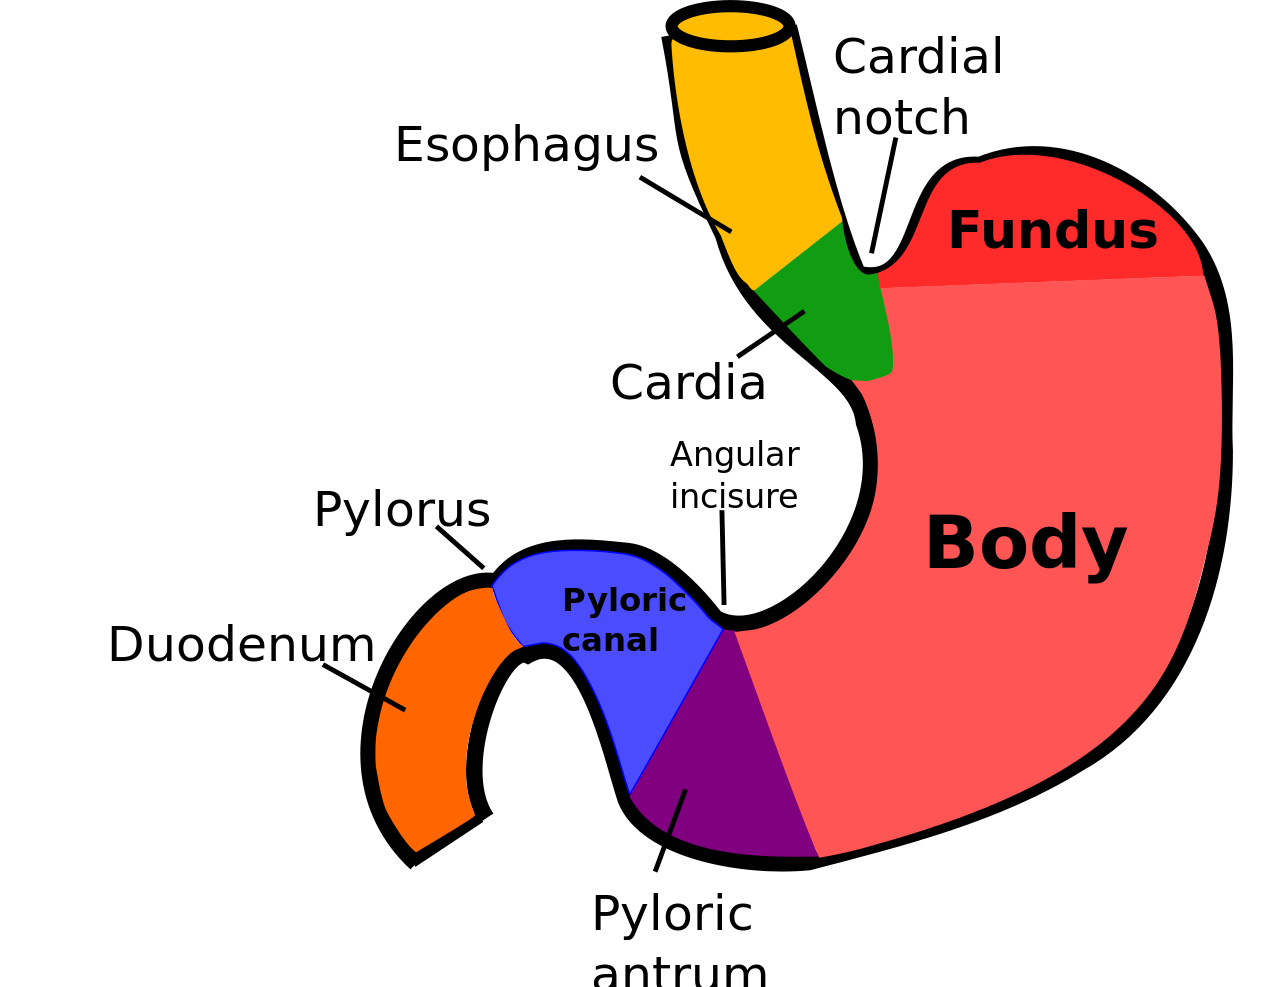 Части органа желудка. Строение желудка кардиальная вырезка. Желудок кардиальный отдел желудка. Пилорический отдел желудка схема. Кардиальная часть желудка анатомия.